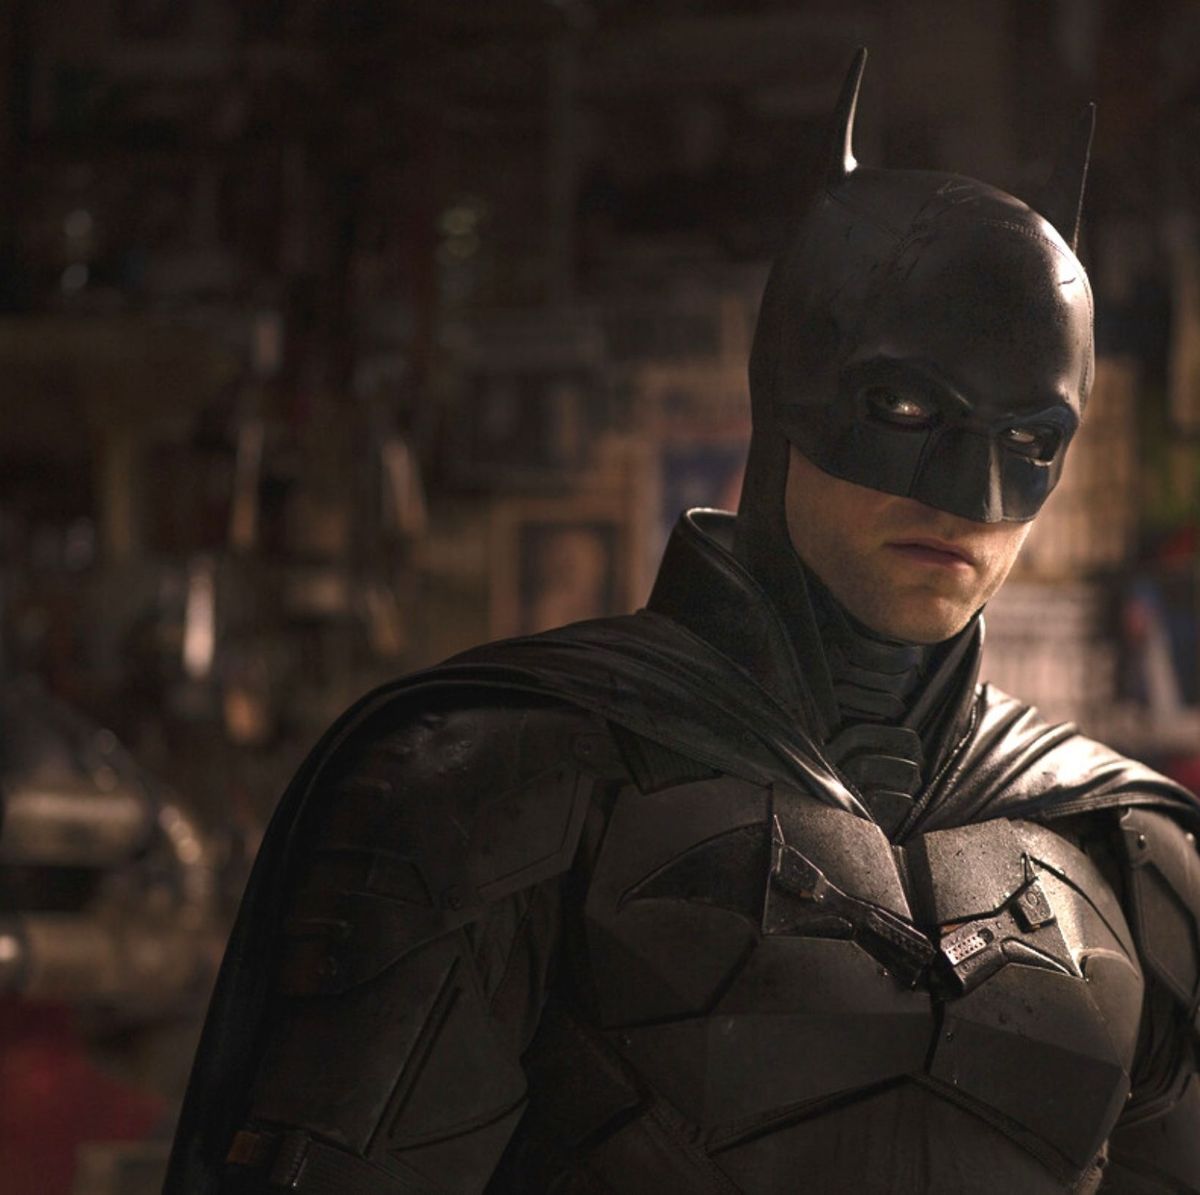 The Batman: cómo encaja la nueva película de Robert Pattinson